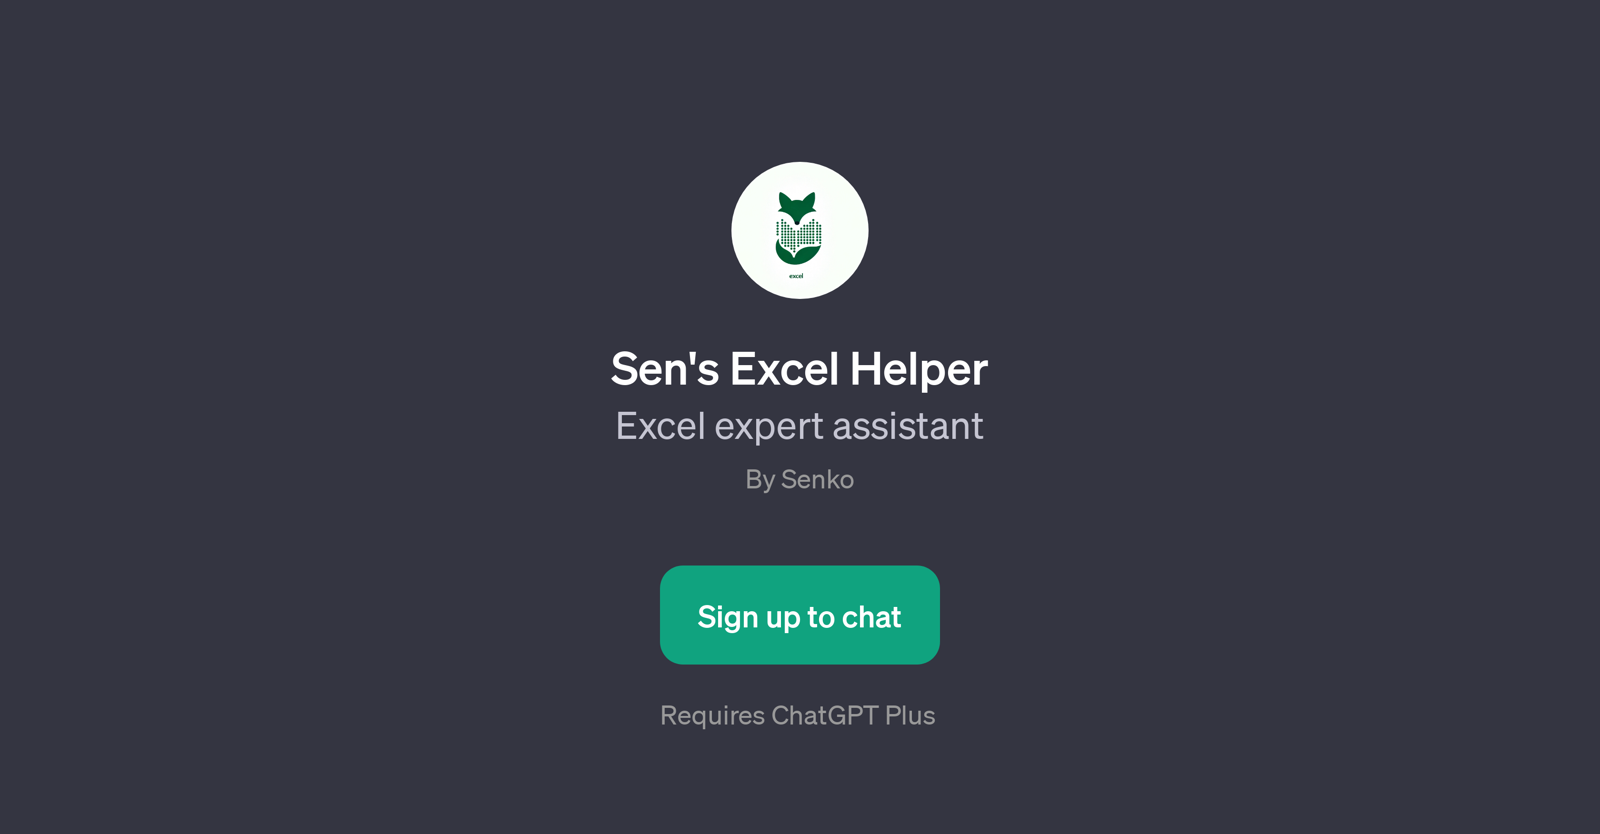 Sen's Excel Helper website